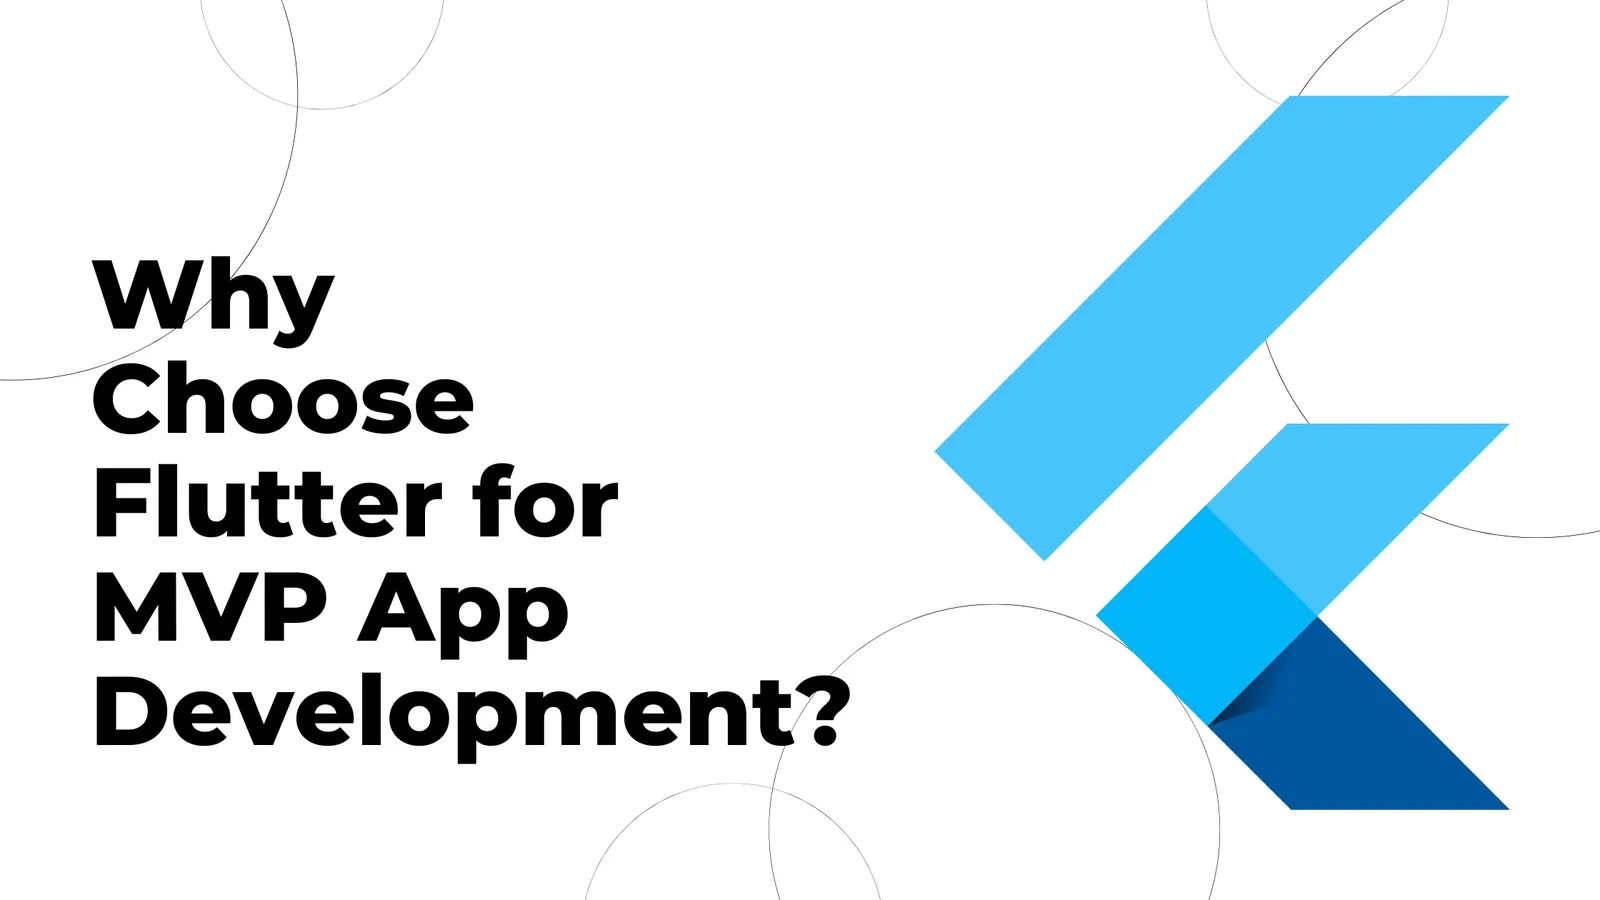 Why Choose Flutter for MVP App Development?